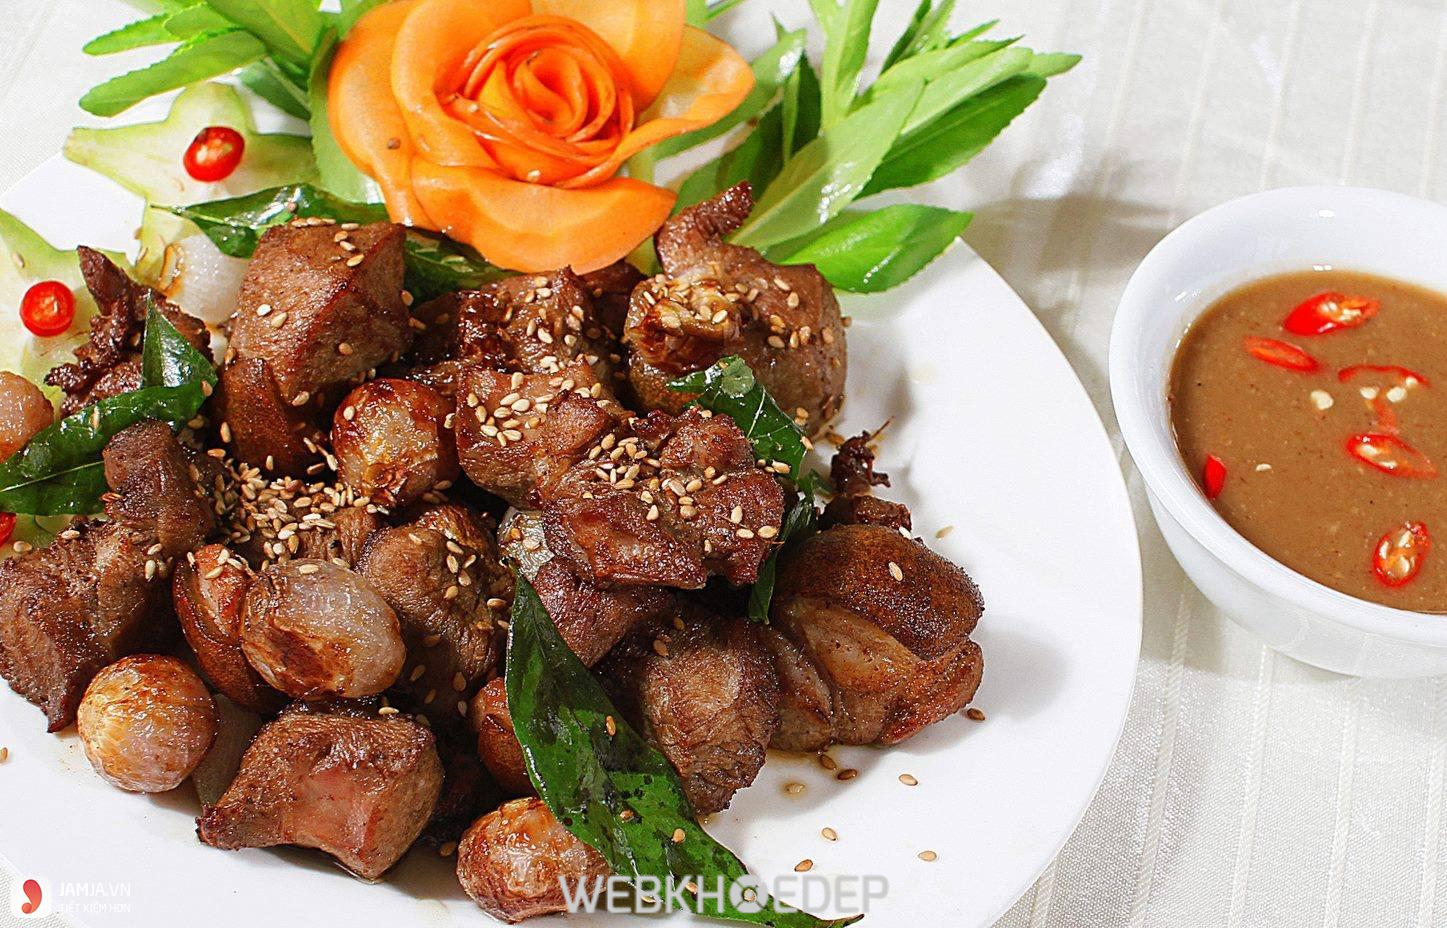 Thịt heo nướng tẩm ướp với chao mang lại hương vị thơm ngon đặc biệt khiến ai ăn cũng mê